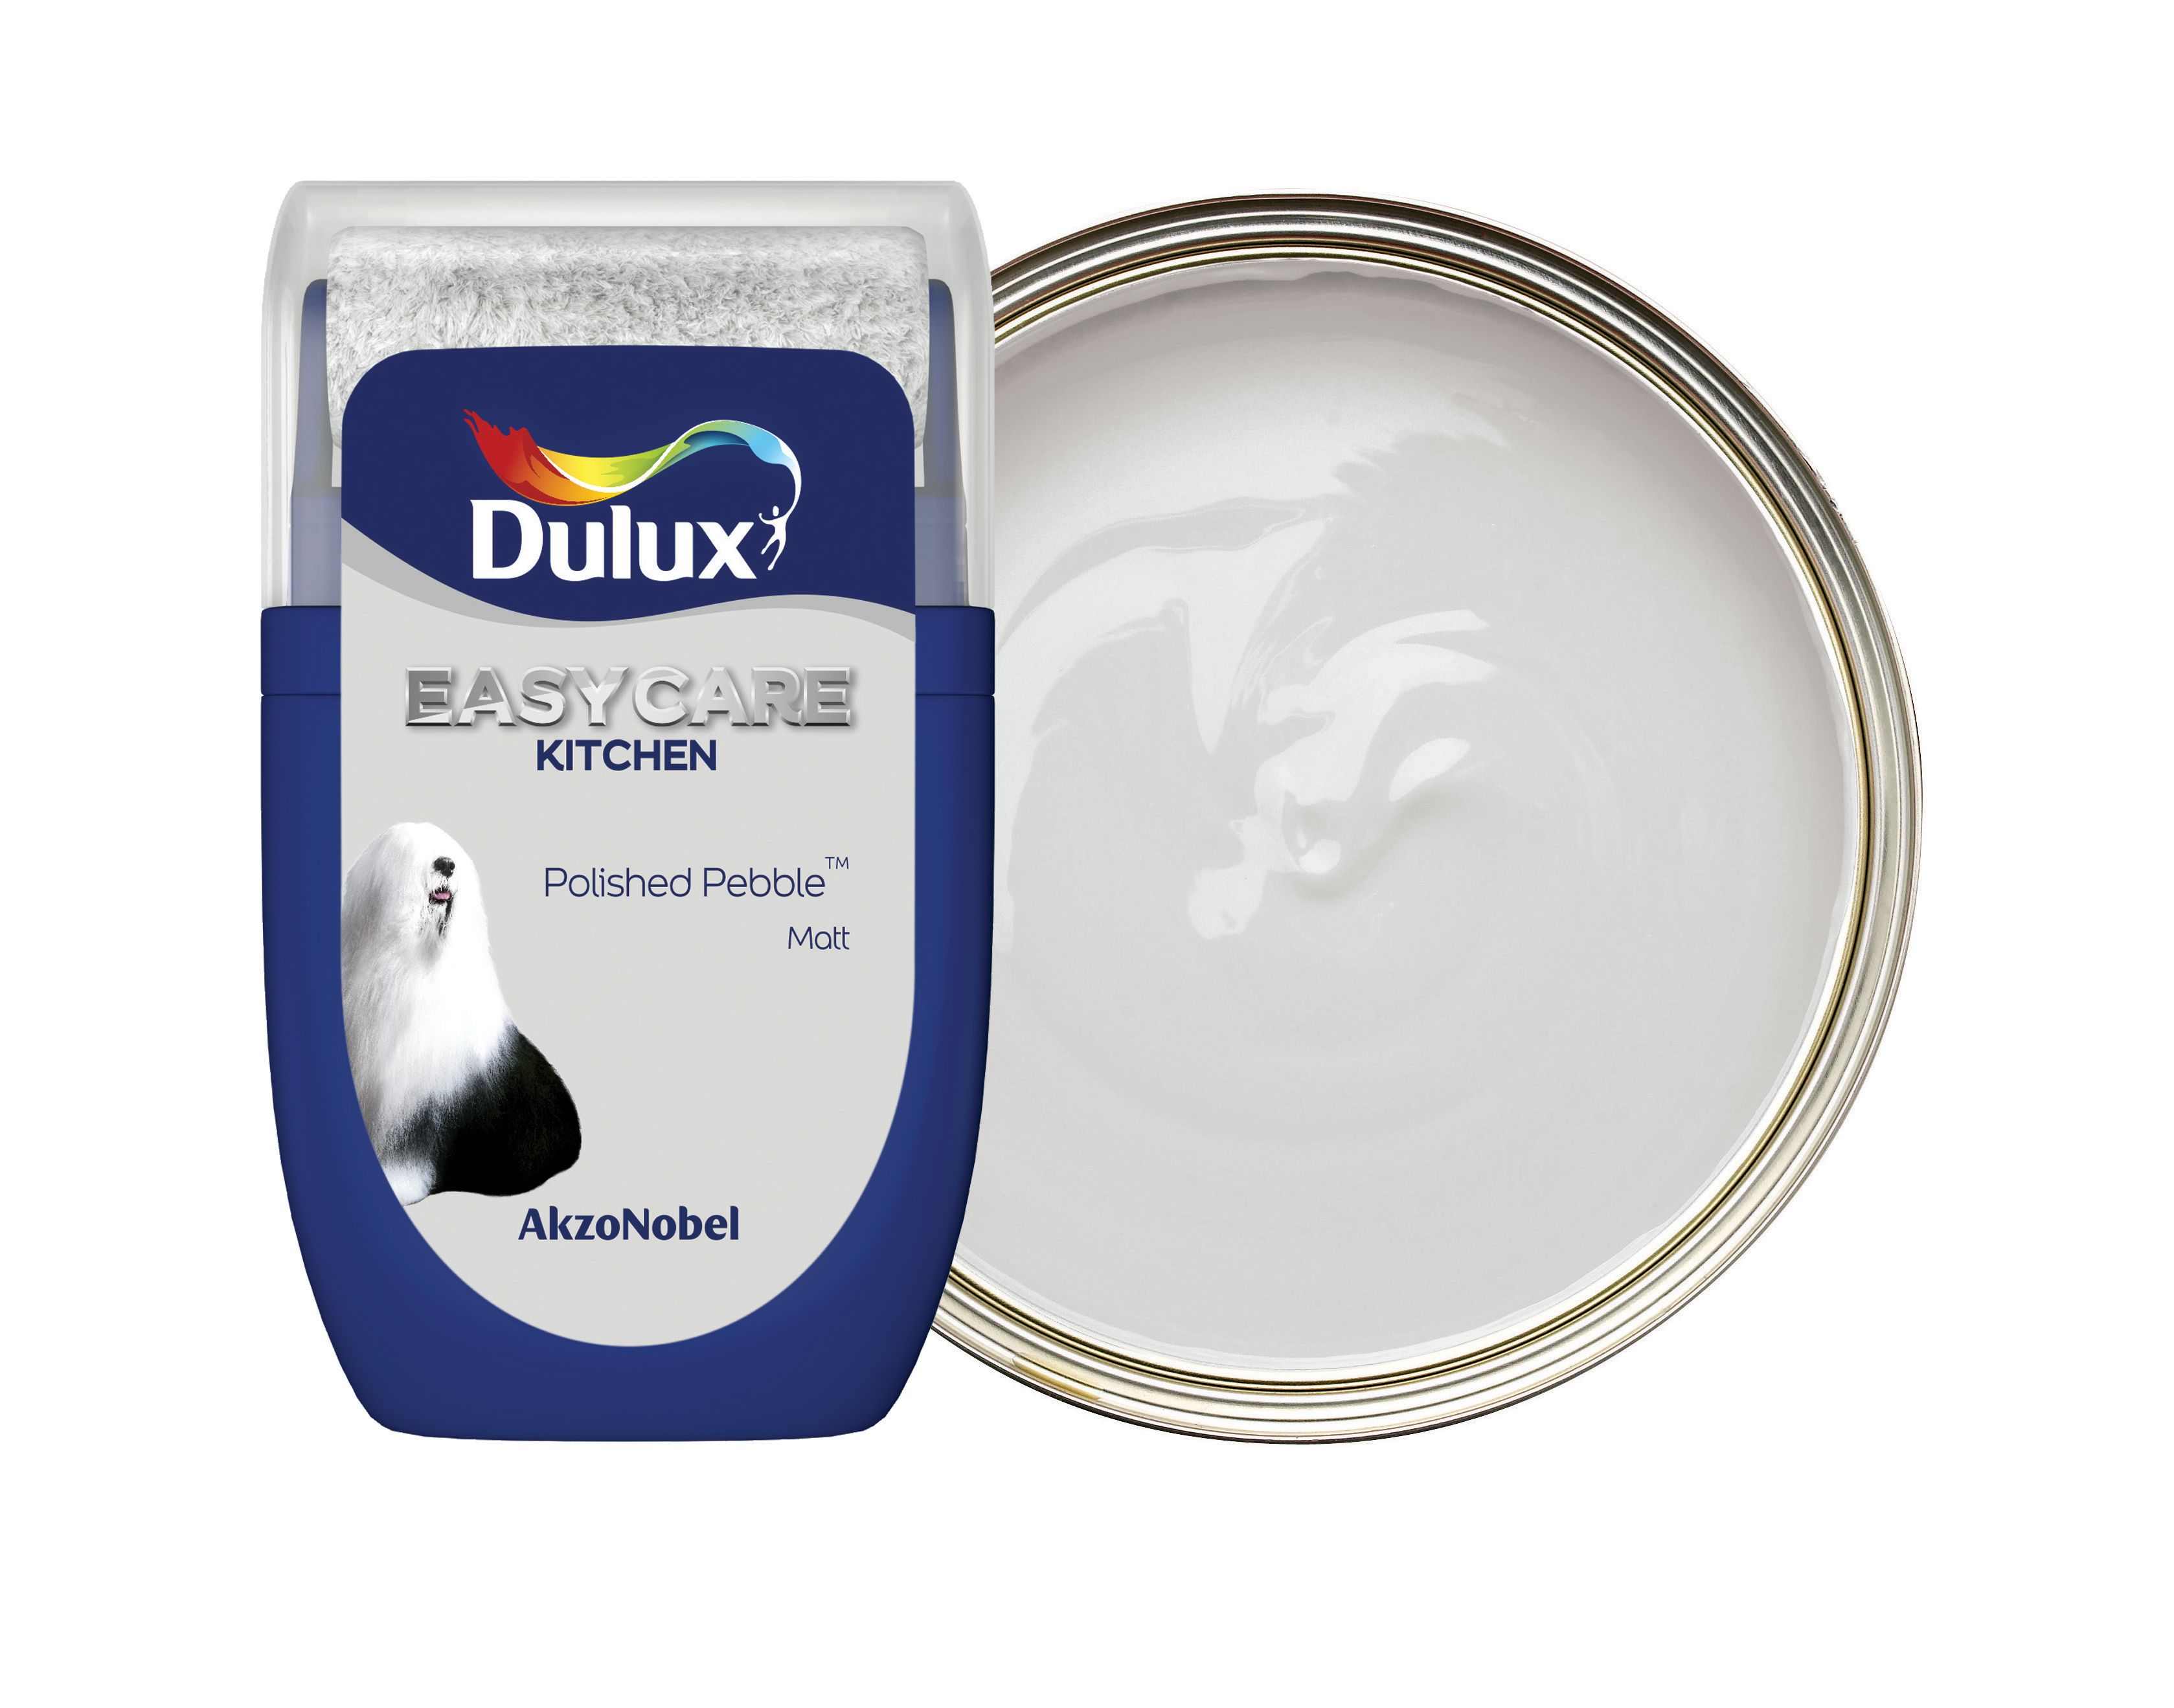 Dulux Easycare Kitchen Paint Tester Pot - Polished Pebble - 30ml